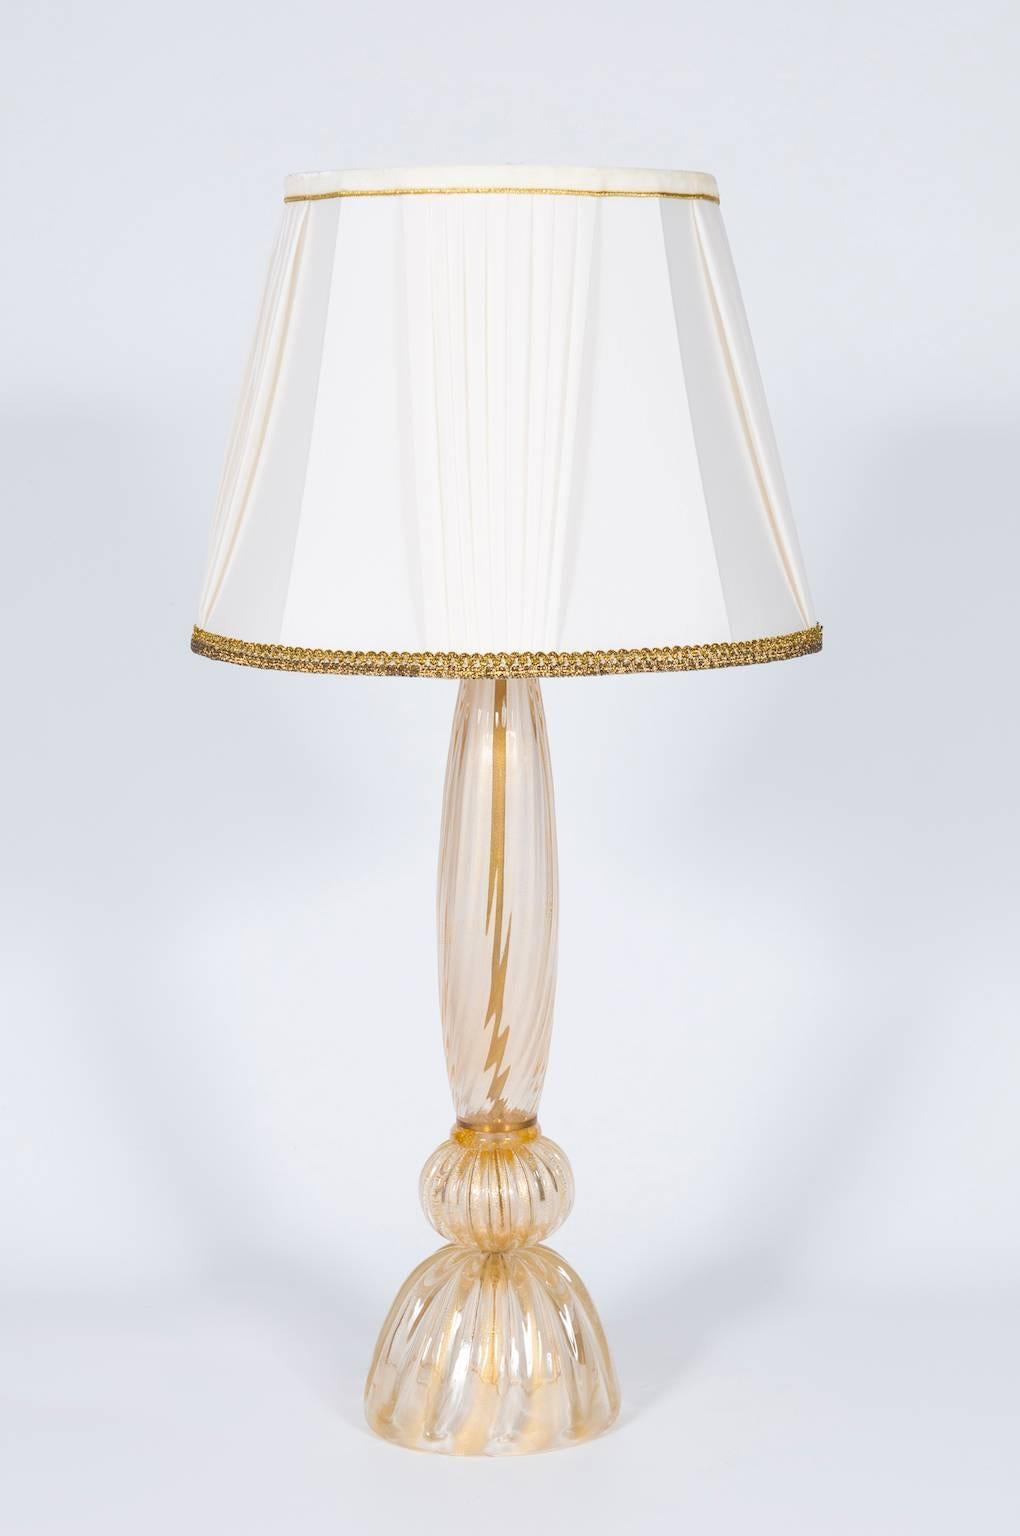 Handgefertigte goldene italienische Tischlampe aus Muranoglas, bestehend aus einer goldgestreiften Basis mit einer Kugel darüber und einem goldgestreiften Stiel, mit einem Licht darüber. Die Tischlampe ist in sehr gutem Originalzustand, hergestellt